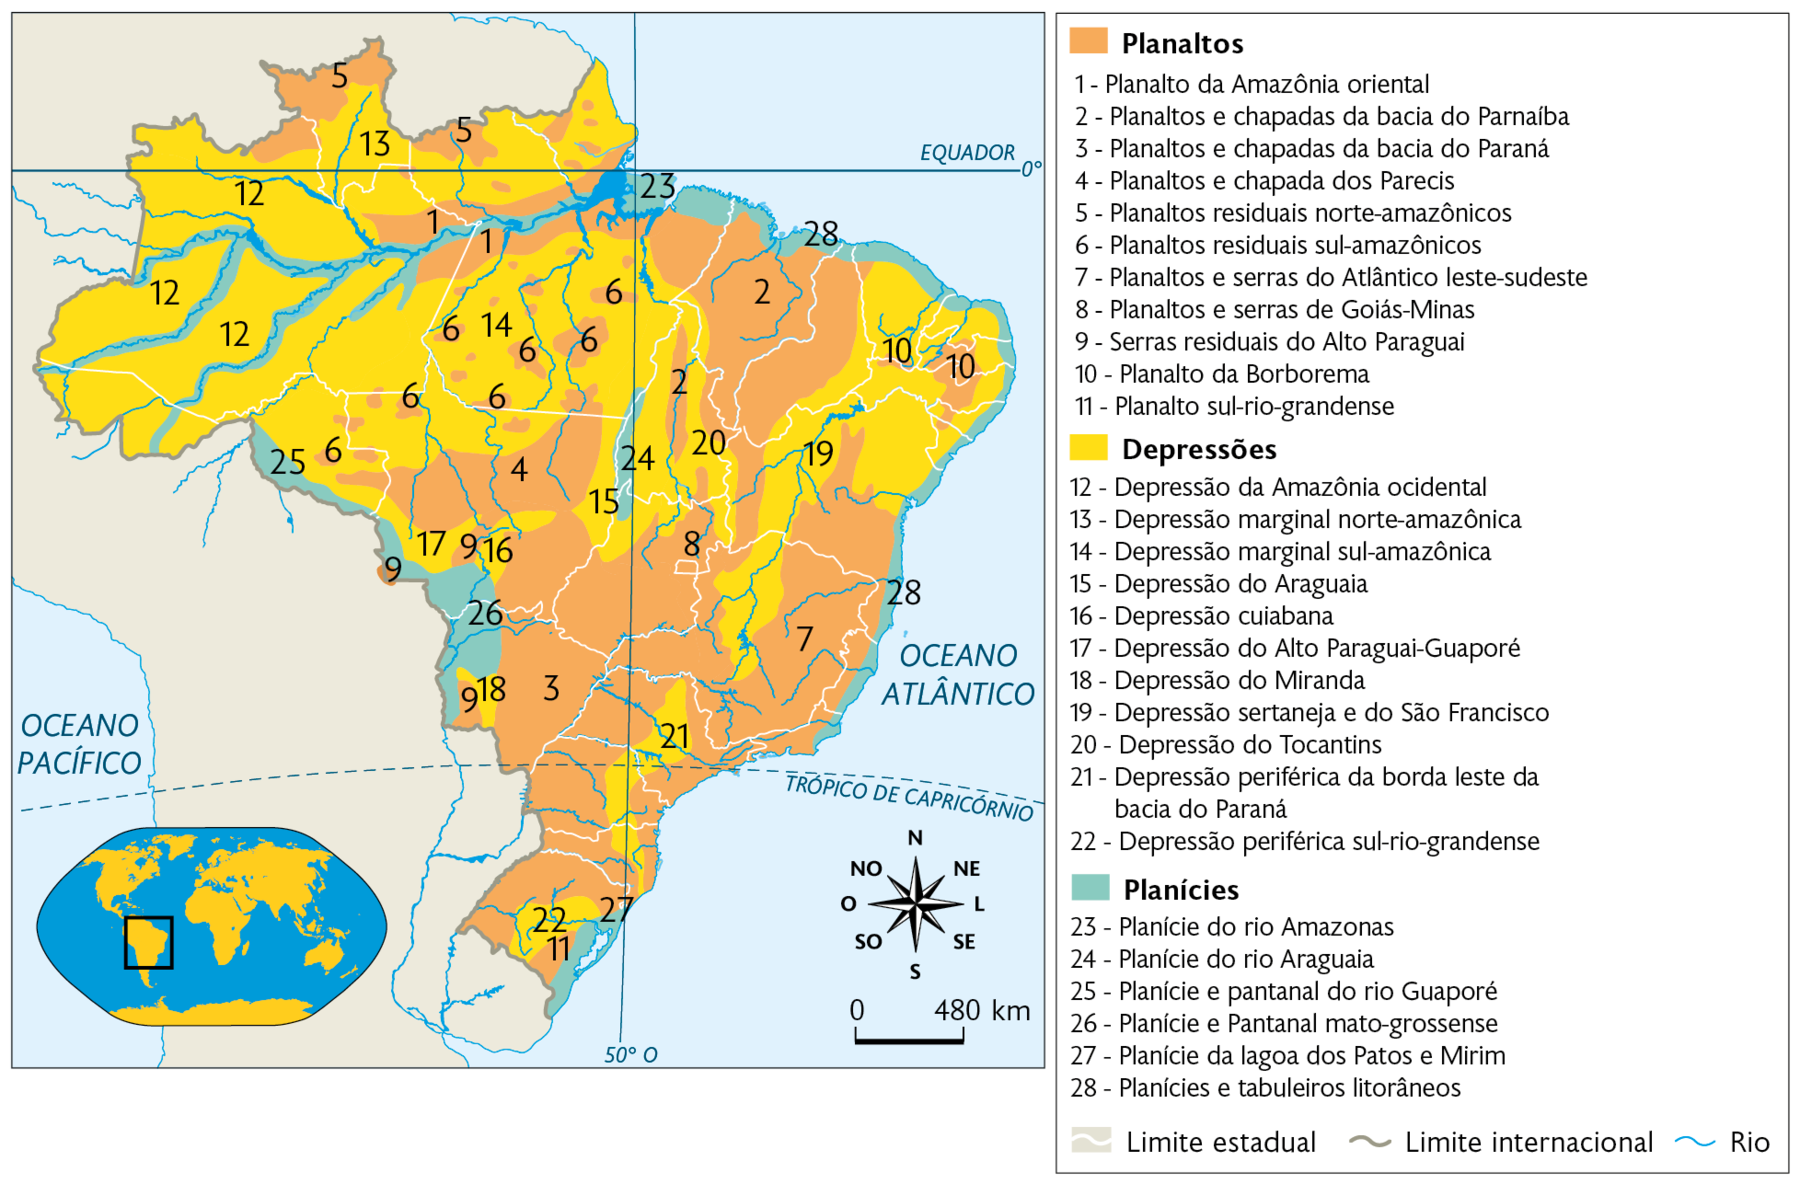 Mapa. Unidades do relevo brasileiro (Classificação de Jurandyr L. S. Ross). 
Planaltos: em maior concentração no Centro-oeste, Sudeste e Sul, com uma grande área no Nordeste e áreas menores no Norte. Com: 1 - Planalto da Amazônia oriental; 2 - Planaltos e chapadas da bacia do Parnaíba; 3 - Planaltos e chapadas da bacia do Paraná; 4 - Planaltos e chapada dos Parecis; 5 - Planaltos residuais norte-amazônicos; 6 - Planaltos residuais sul-amazônicos; 7 - Planaltos e serras do Atlântico leste-sudeste; 8 - Planaltos e serras de Goiás-Minas;  9 - Serras residuais do Alto Paraguai: 10 - Planalto da Borborema; 11 - Planalto sul-rio-grandense. Depressões: em maior quantidade na Região Norte e Nordeste, com áreas dispersas no Centro-oeste, Sudeste e Sul. Com: 12 - Depressão da Amazônia ocidental; 13 - Depressão marginal norte-amazônica; 14 - Depressão marginal sul-amazônica; 15 - Depressão do Araguaia; 16 - Depressão cuiabana; 
17 - Depressão do Alto Paraguai-Guaporé; 18 - Depressão do Miranda; 19 - Depressão sertaneja e do São Francisco; 20 - Depressão do Tocantins; 21 - Depressão periférica da borda leste da bacia do Paraná; 22 - Depressão periférica sul-rio-grandense. Planícies:  região ao redor de rios no Amazonas, litoral do Pará, norte e litoral do Rio de Janeiro, oeste da região Centro-oeste. Com: 23 - Planície do rio Amazonas; 24 - Planície do rio Araguaia; 25 - Planície e pantanal do rio Guaporé; 26 - Planície e Pantanal mato-grossense; 27 - Planície da lagoa dos Patos e Mirim; 28 - Planícies e tabuleiros litorâneos. Há rios por todo o território do país. No canto inferior esquerdo, mapa de localização, planisfério destacando a região descrita. No canto inferior direito, a rosa dos ventos e a escala: 480 quilômetros por centímetro.